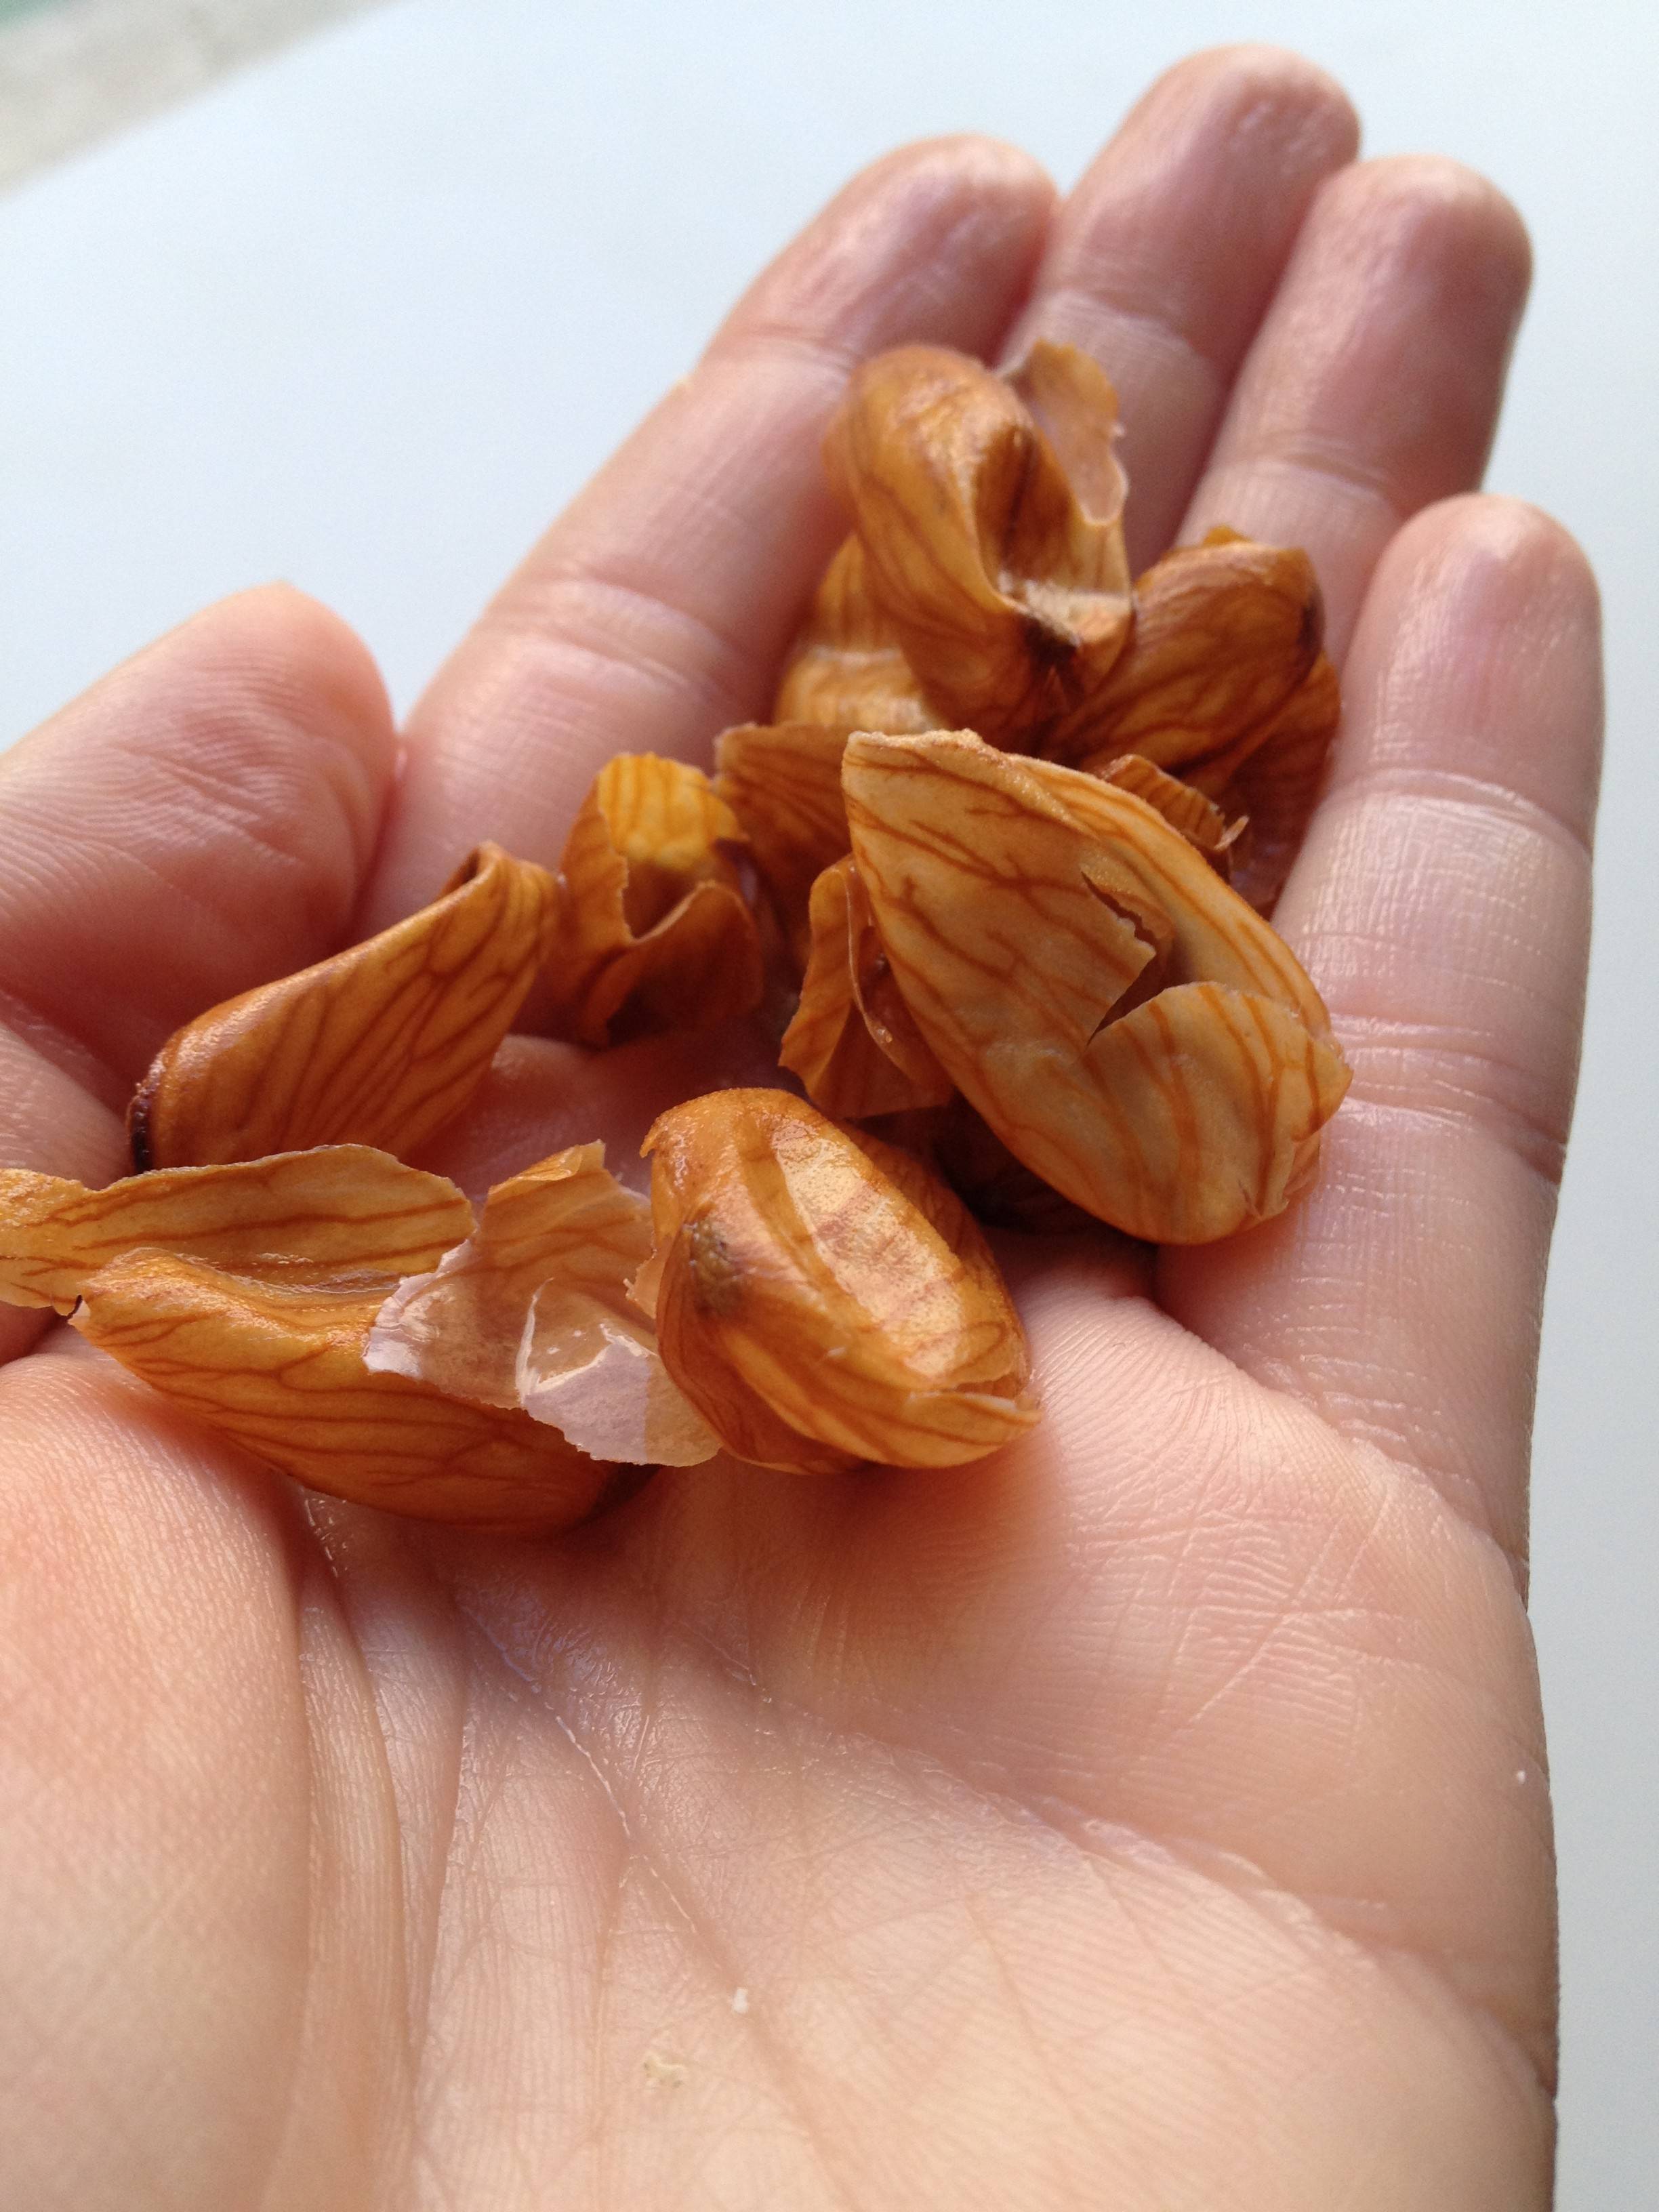 Способы удаления зеленой кожуры грецких орехов. как правильно их очистить и что нужно предпринять для защиты рук?